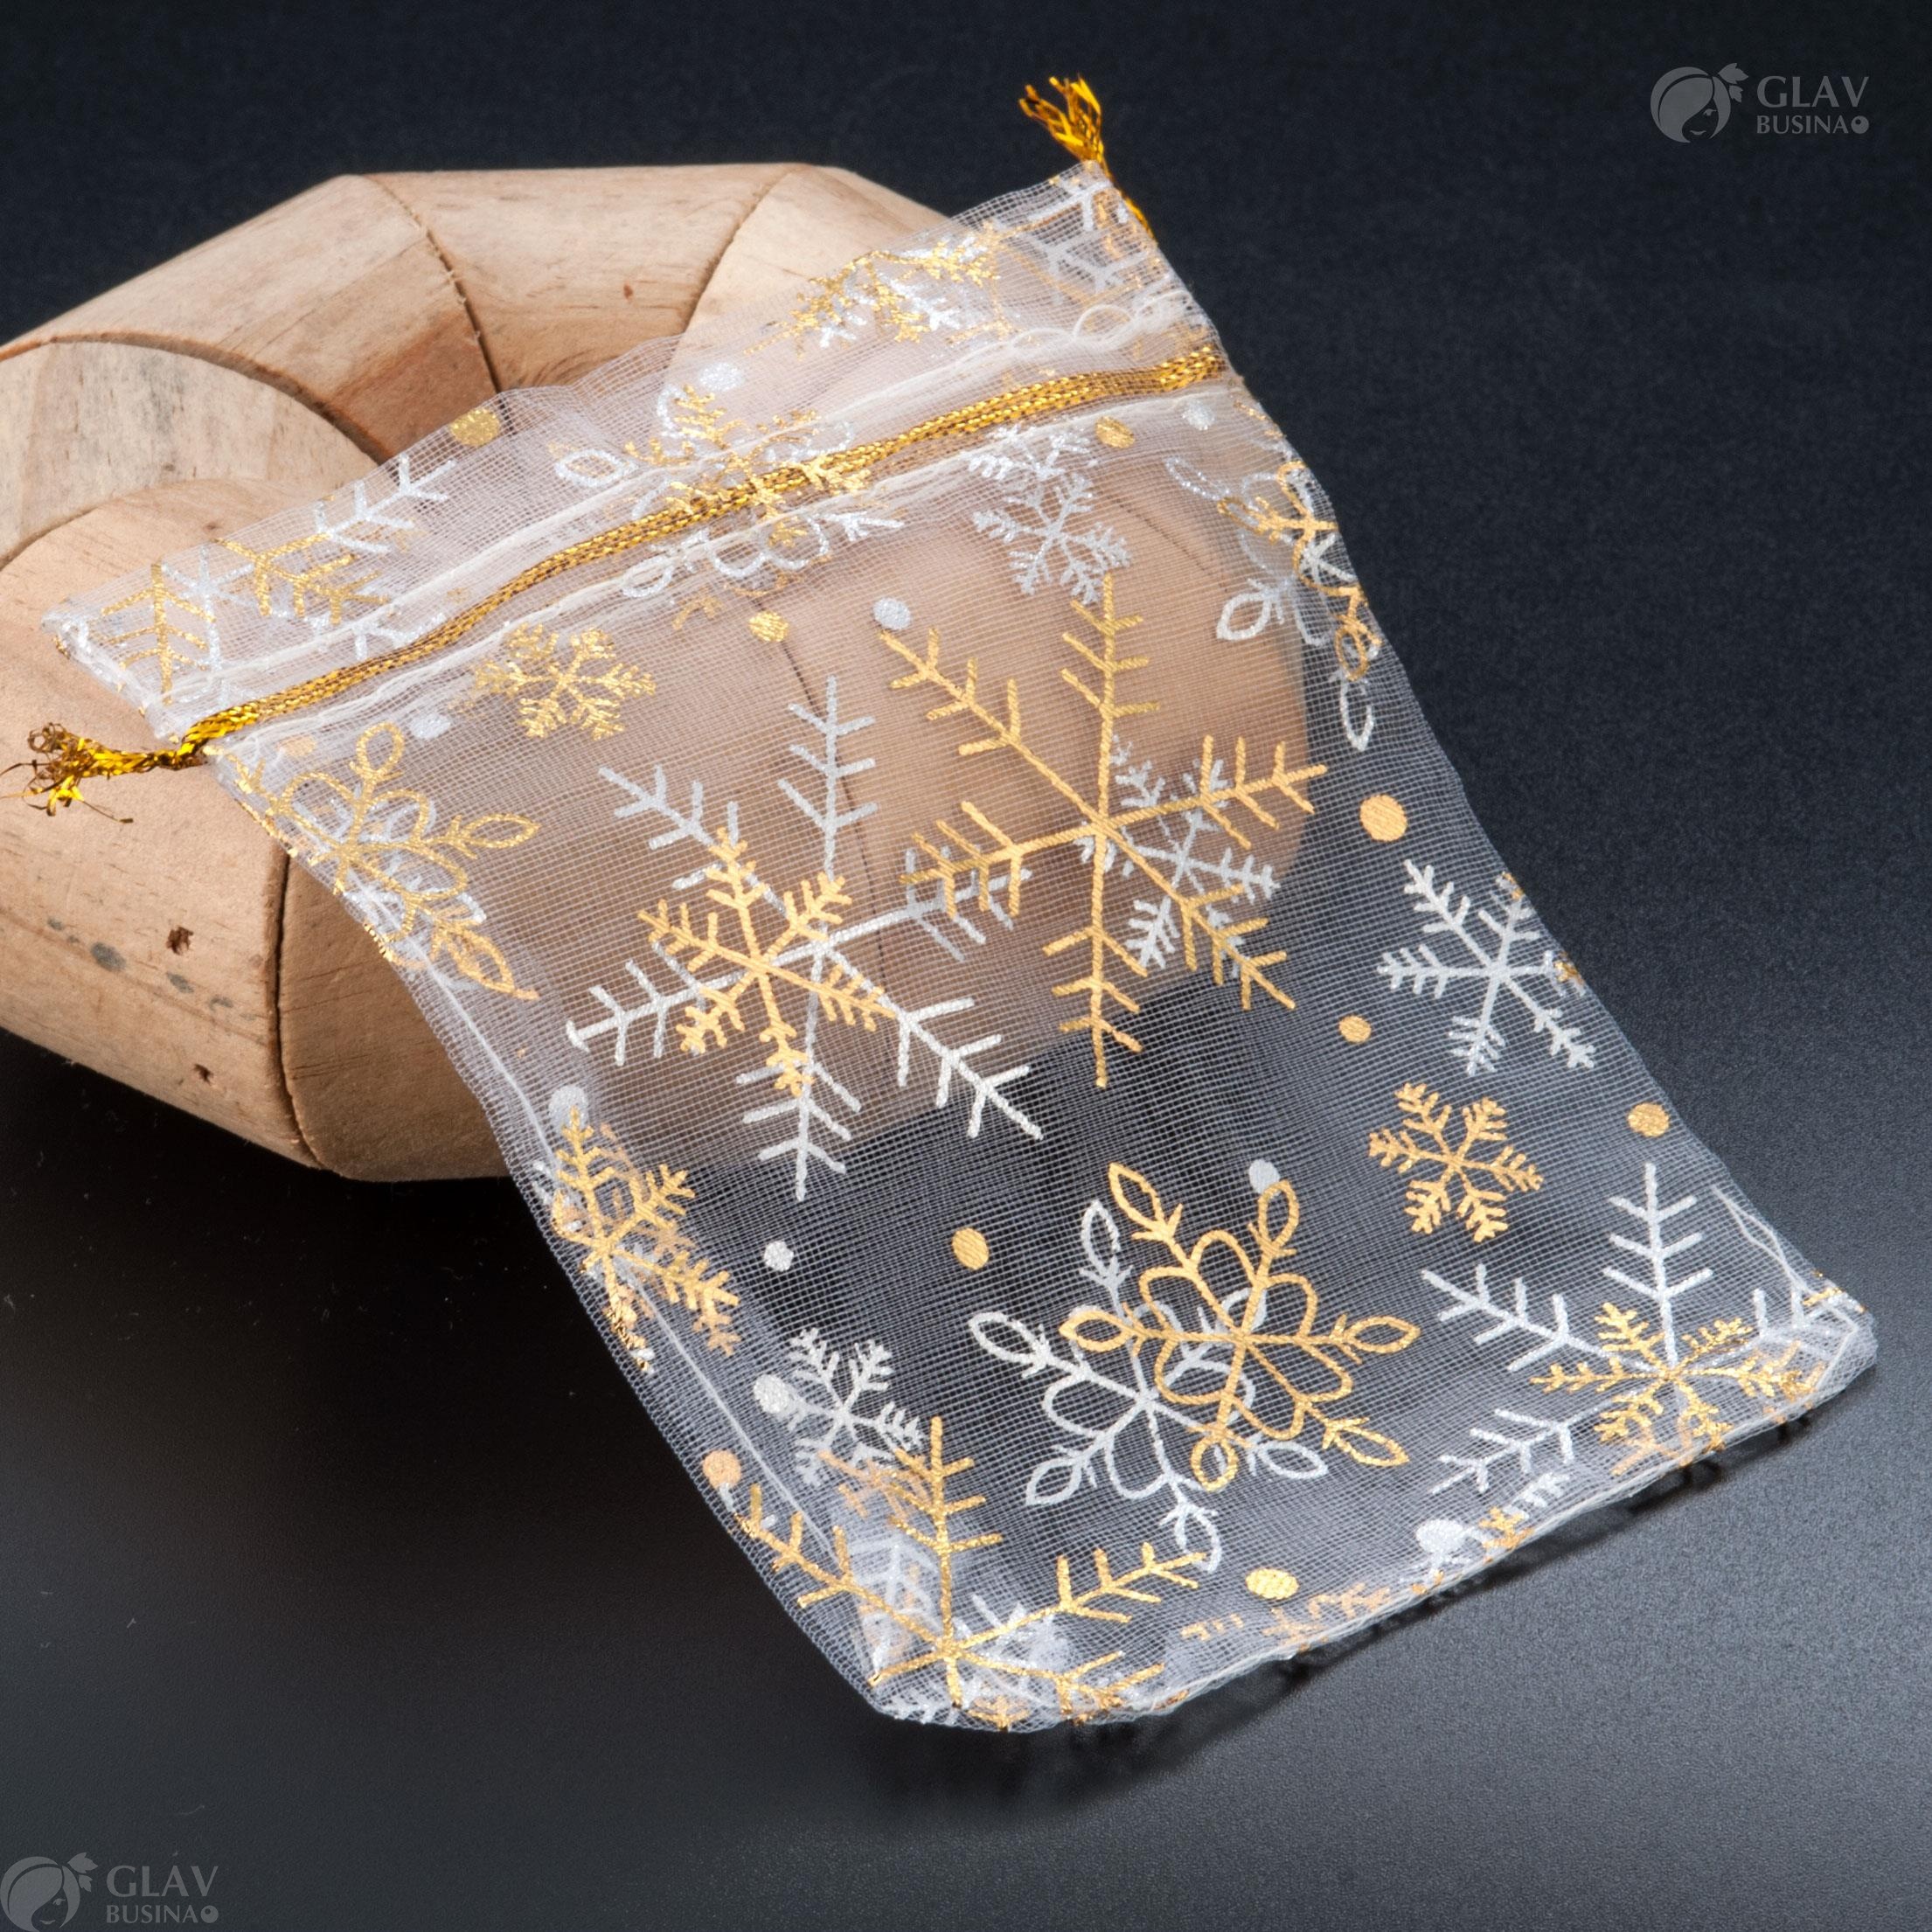 Белые мешочки из органзы с золотыми и серебряными снежинками для новогодних подарков, размером 9х12 см.